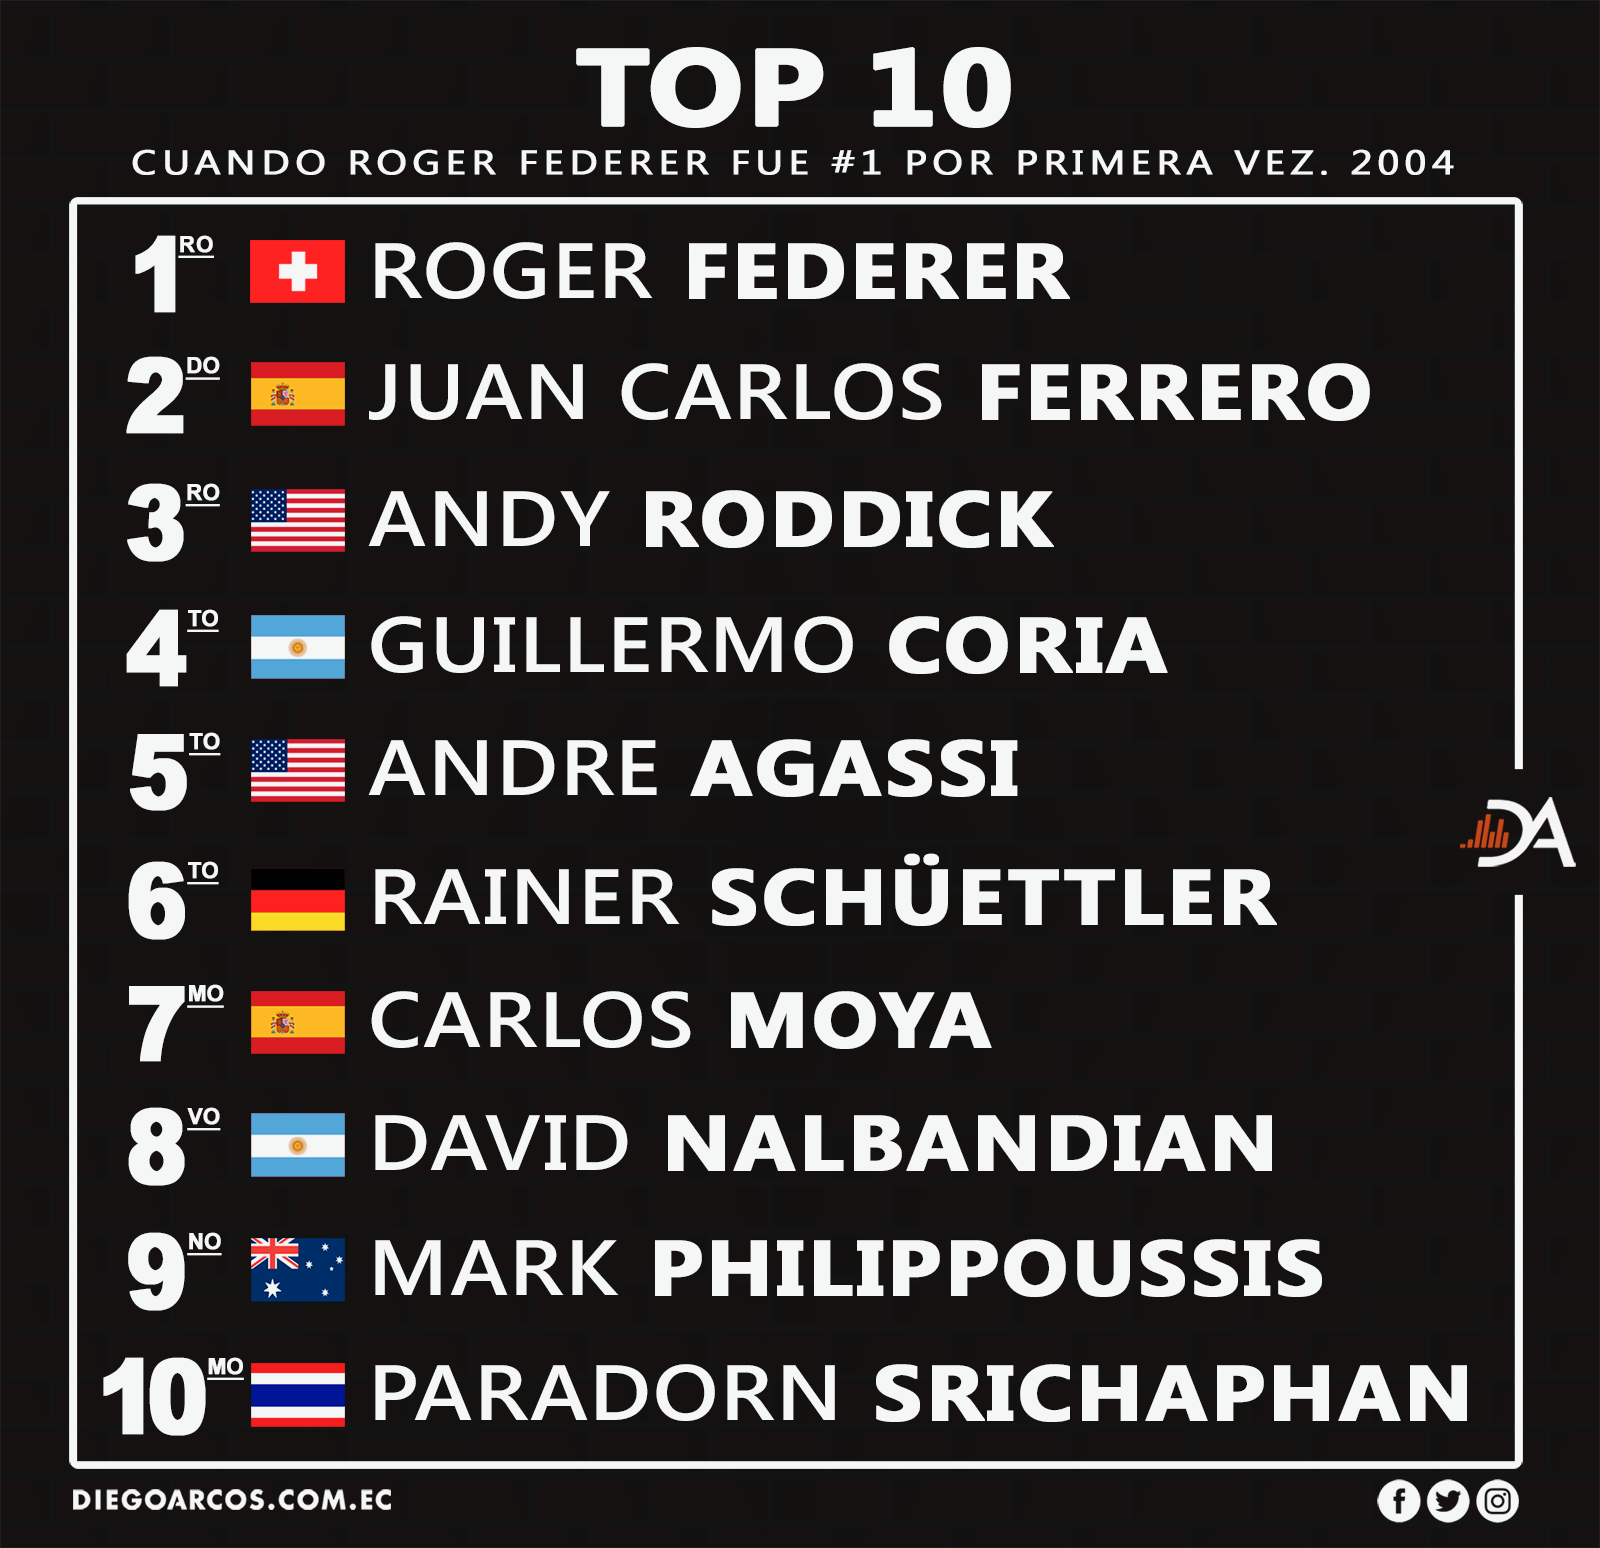 Federer fue #1 por primera vez en 2004